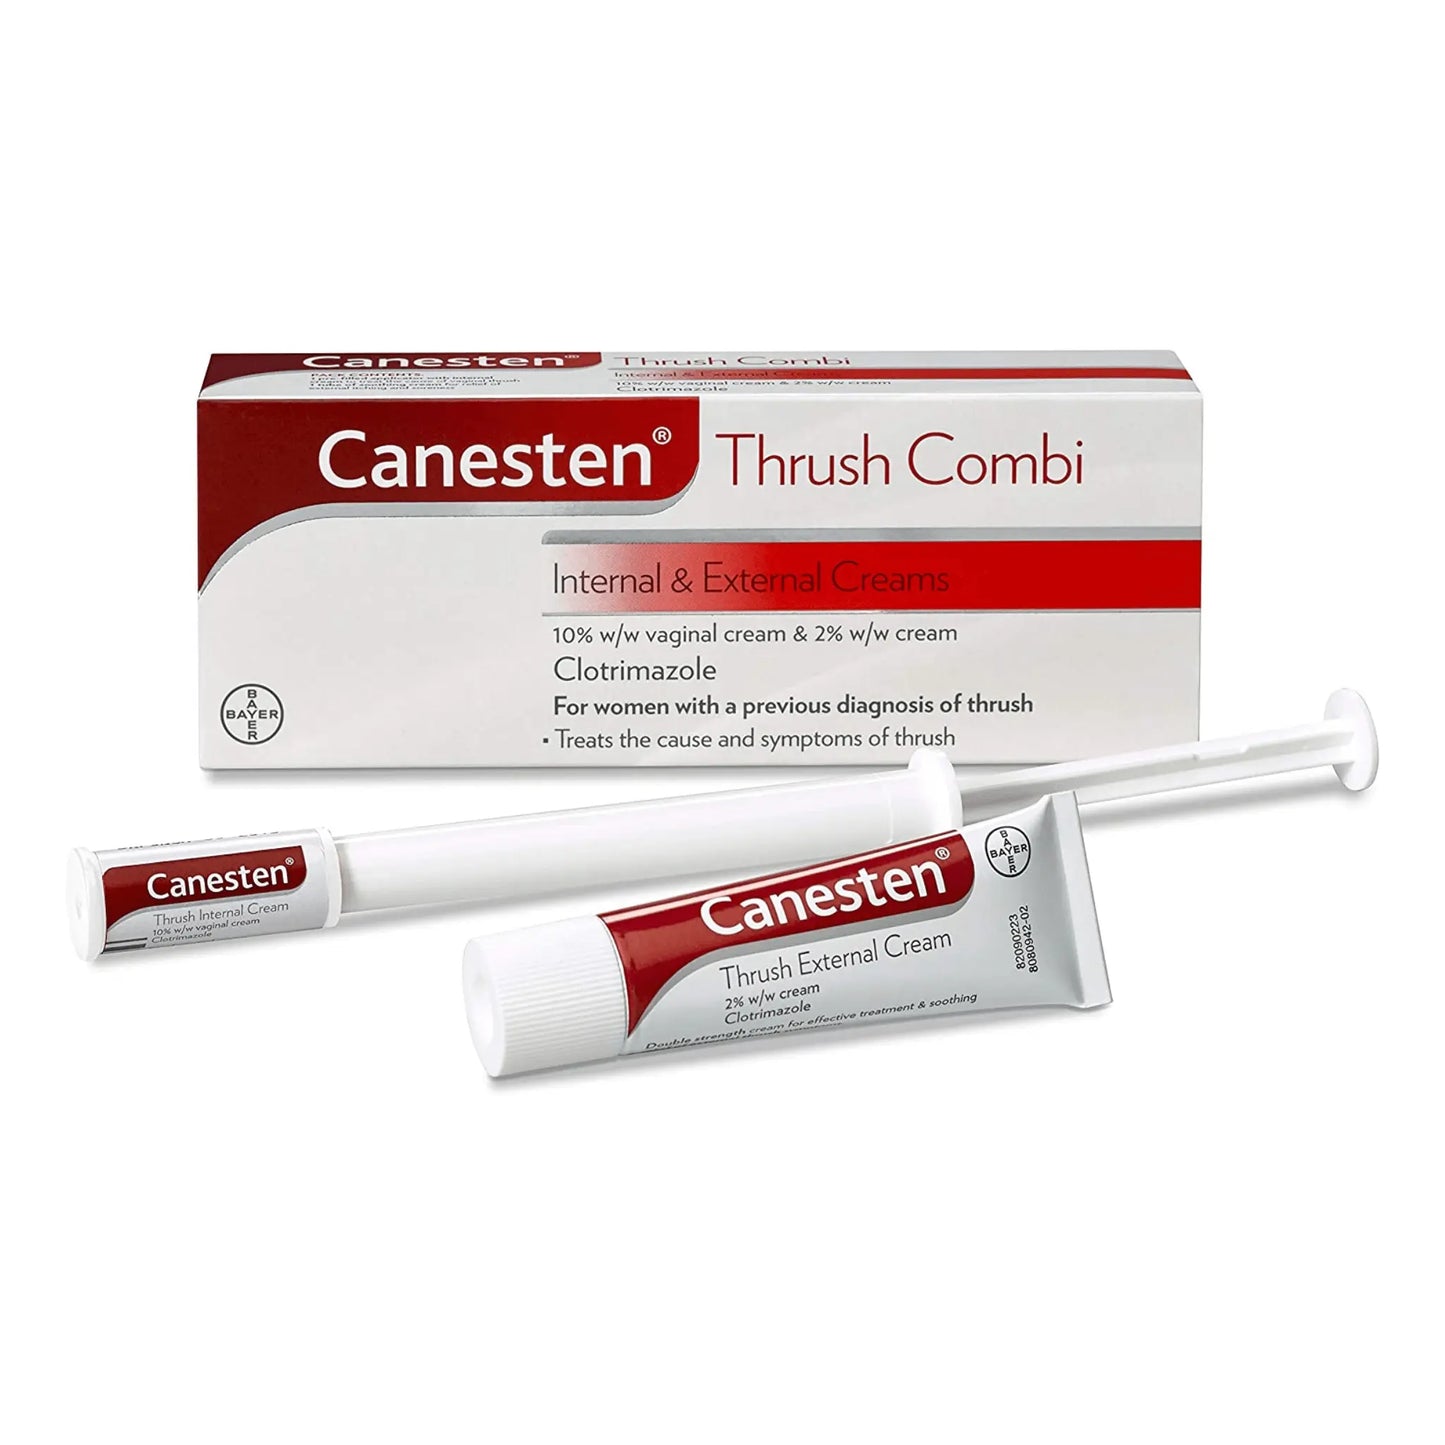 Canesten 2% Thrush 20g Cream - Arc Health Nutrition UK Ltd 